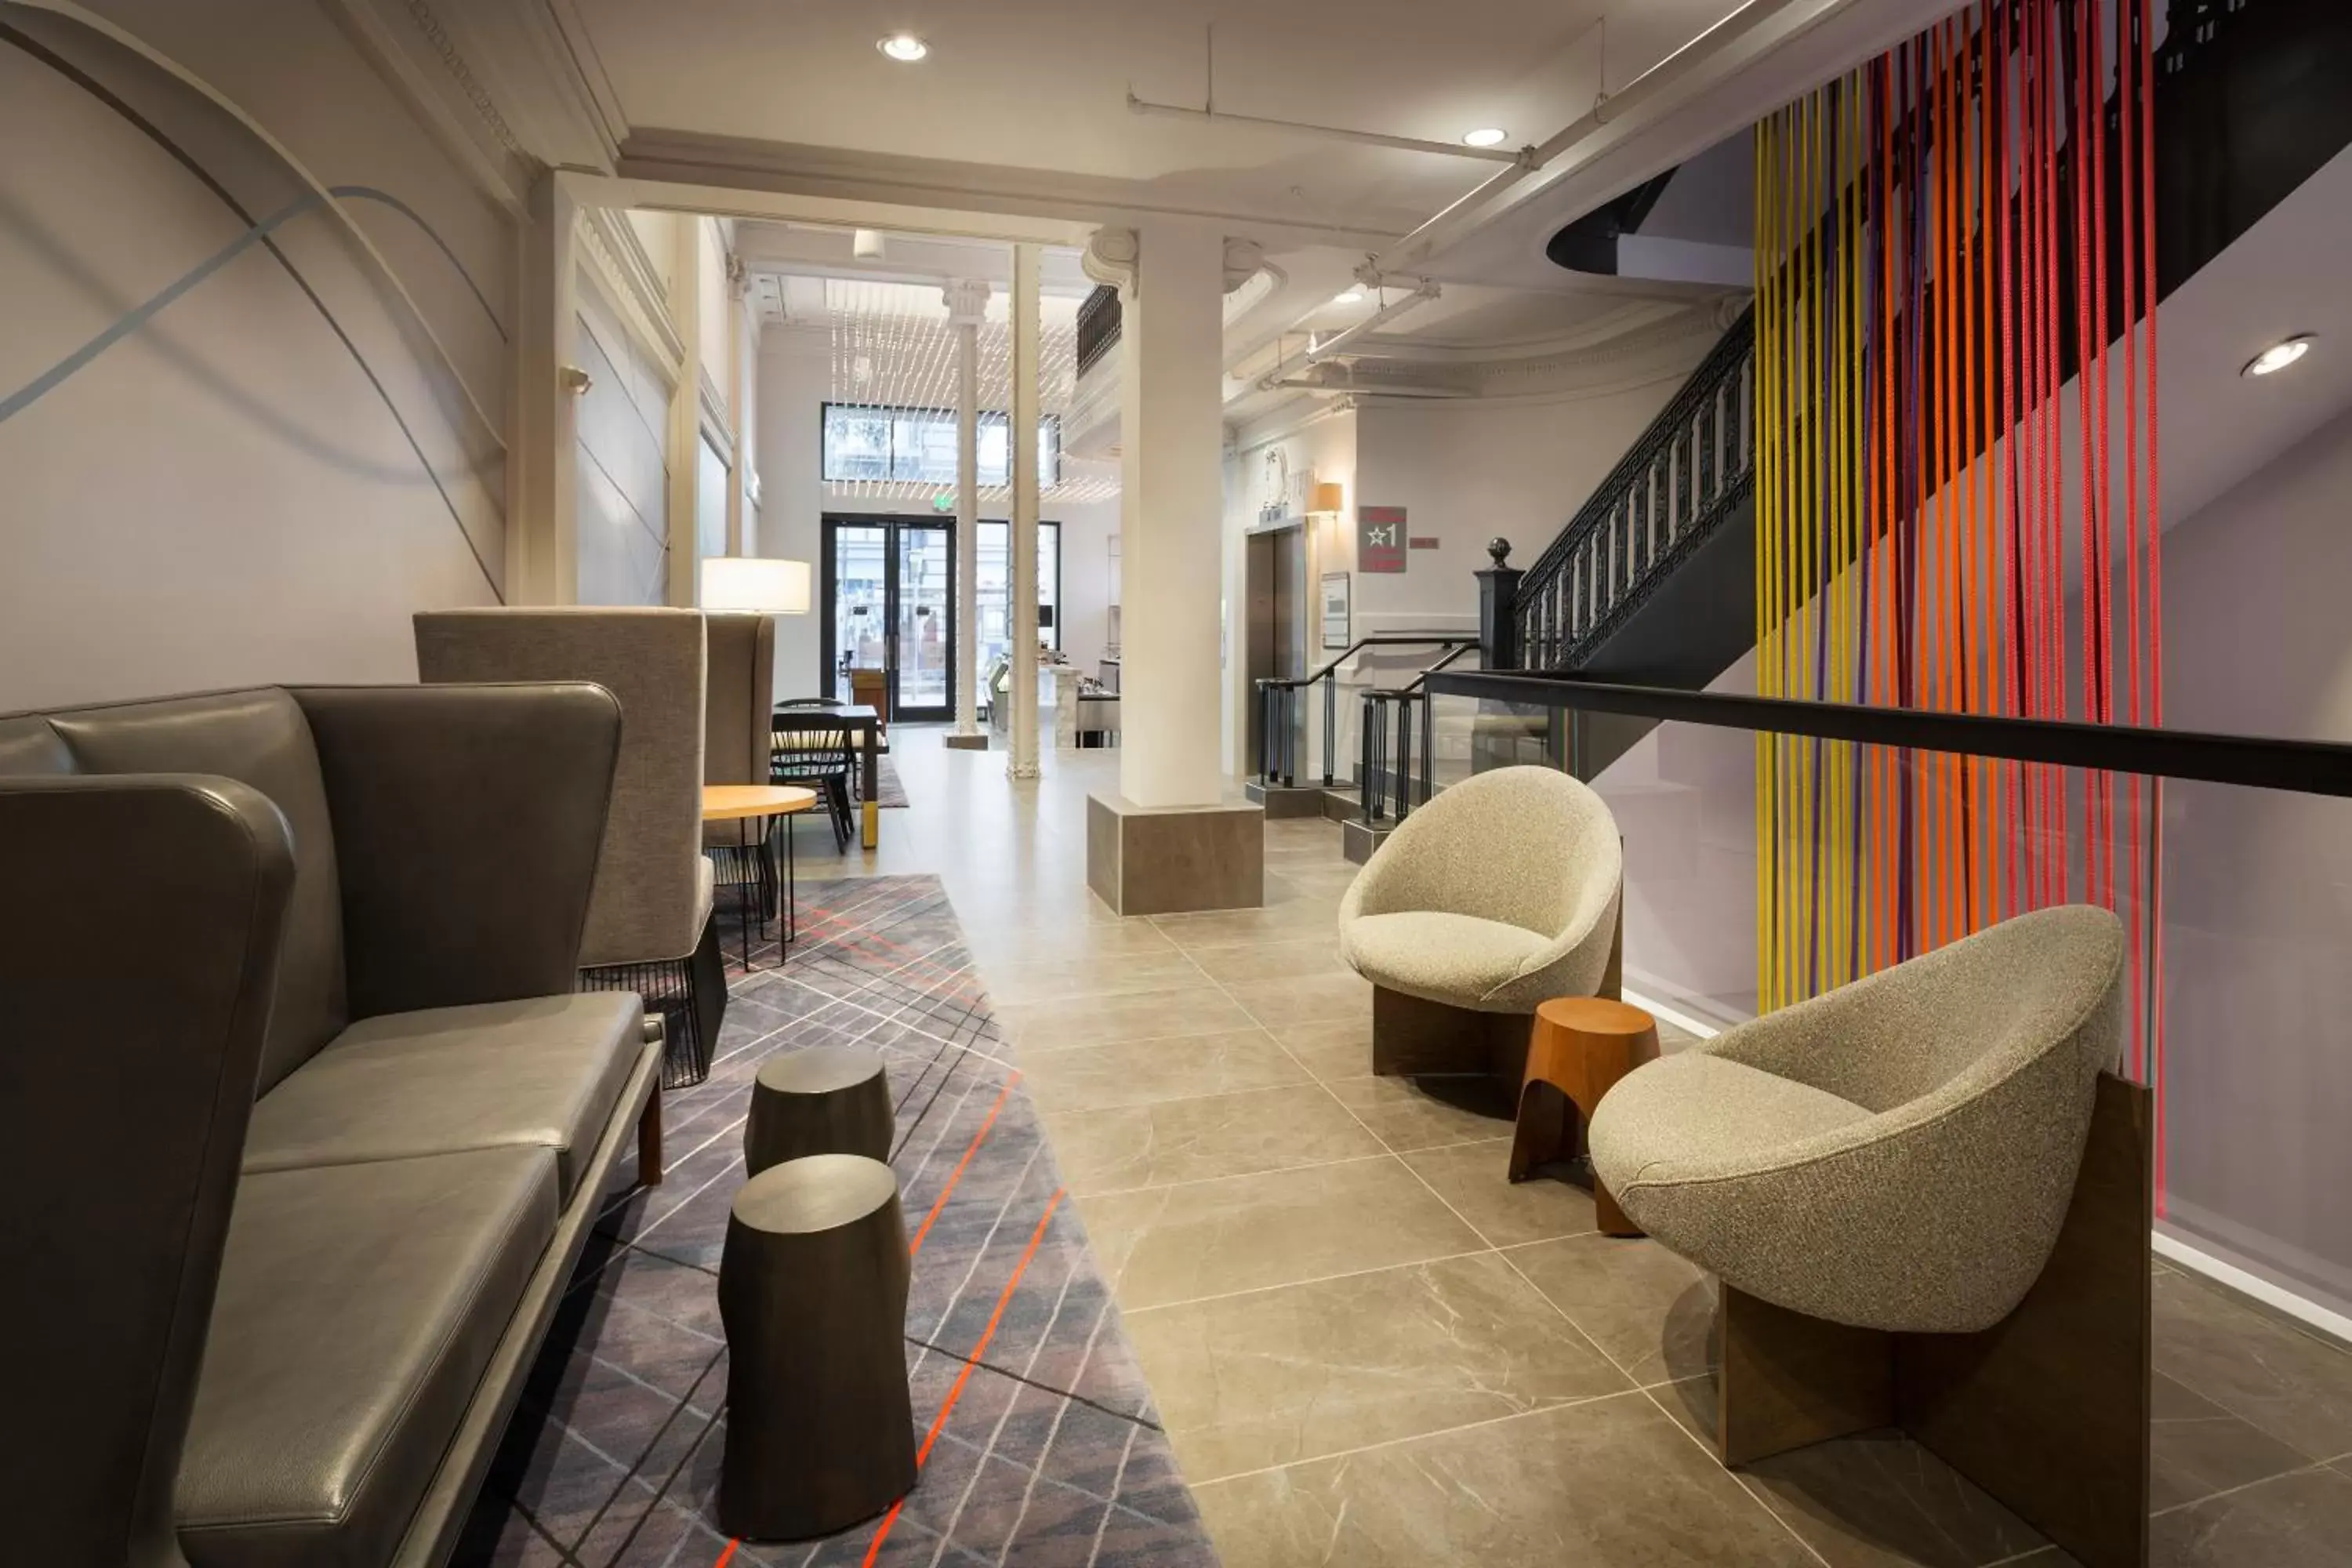 Lobby or reception, Lounge/Bar in Axiom Hotel